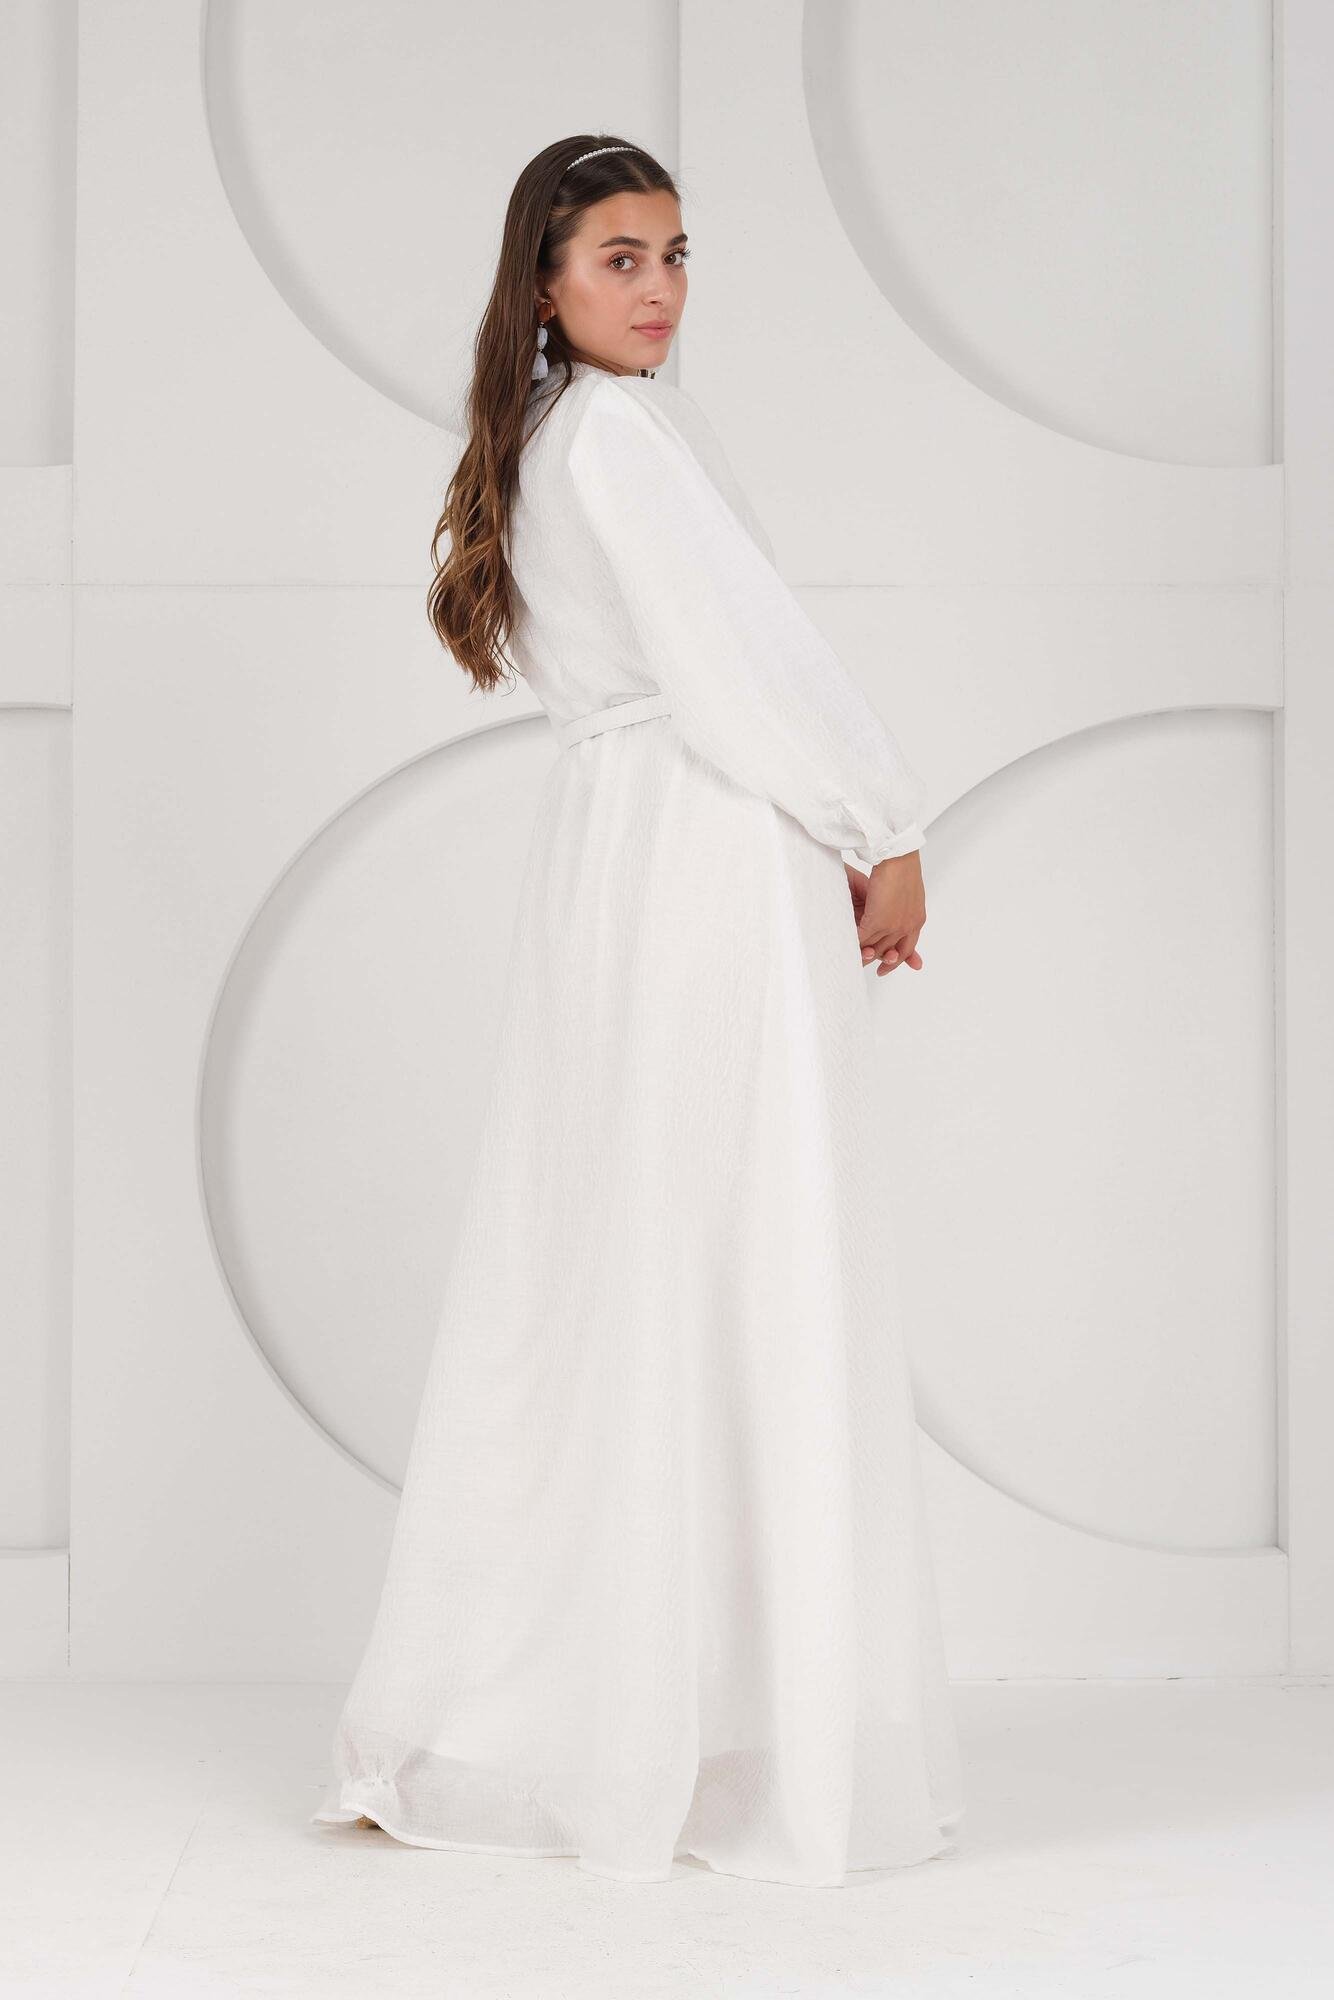 Lady White Dress